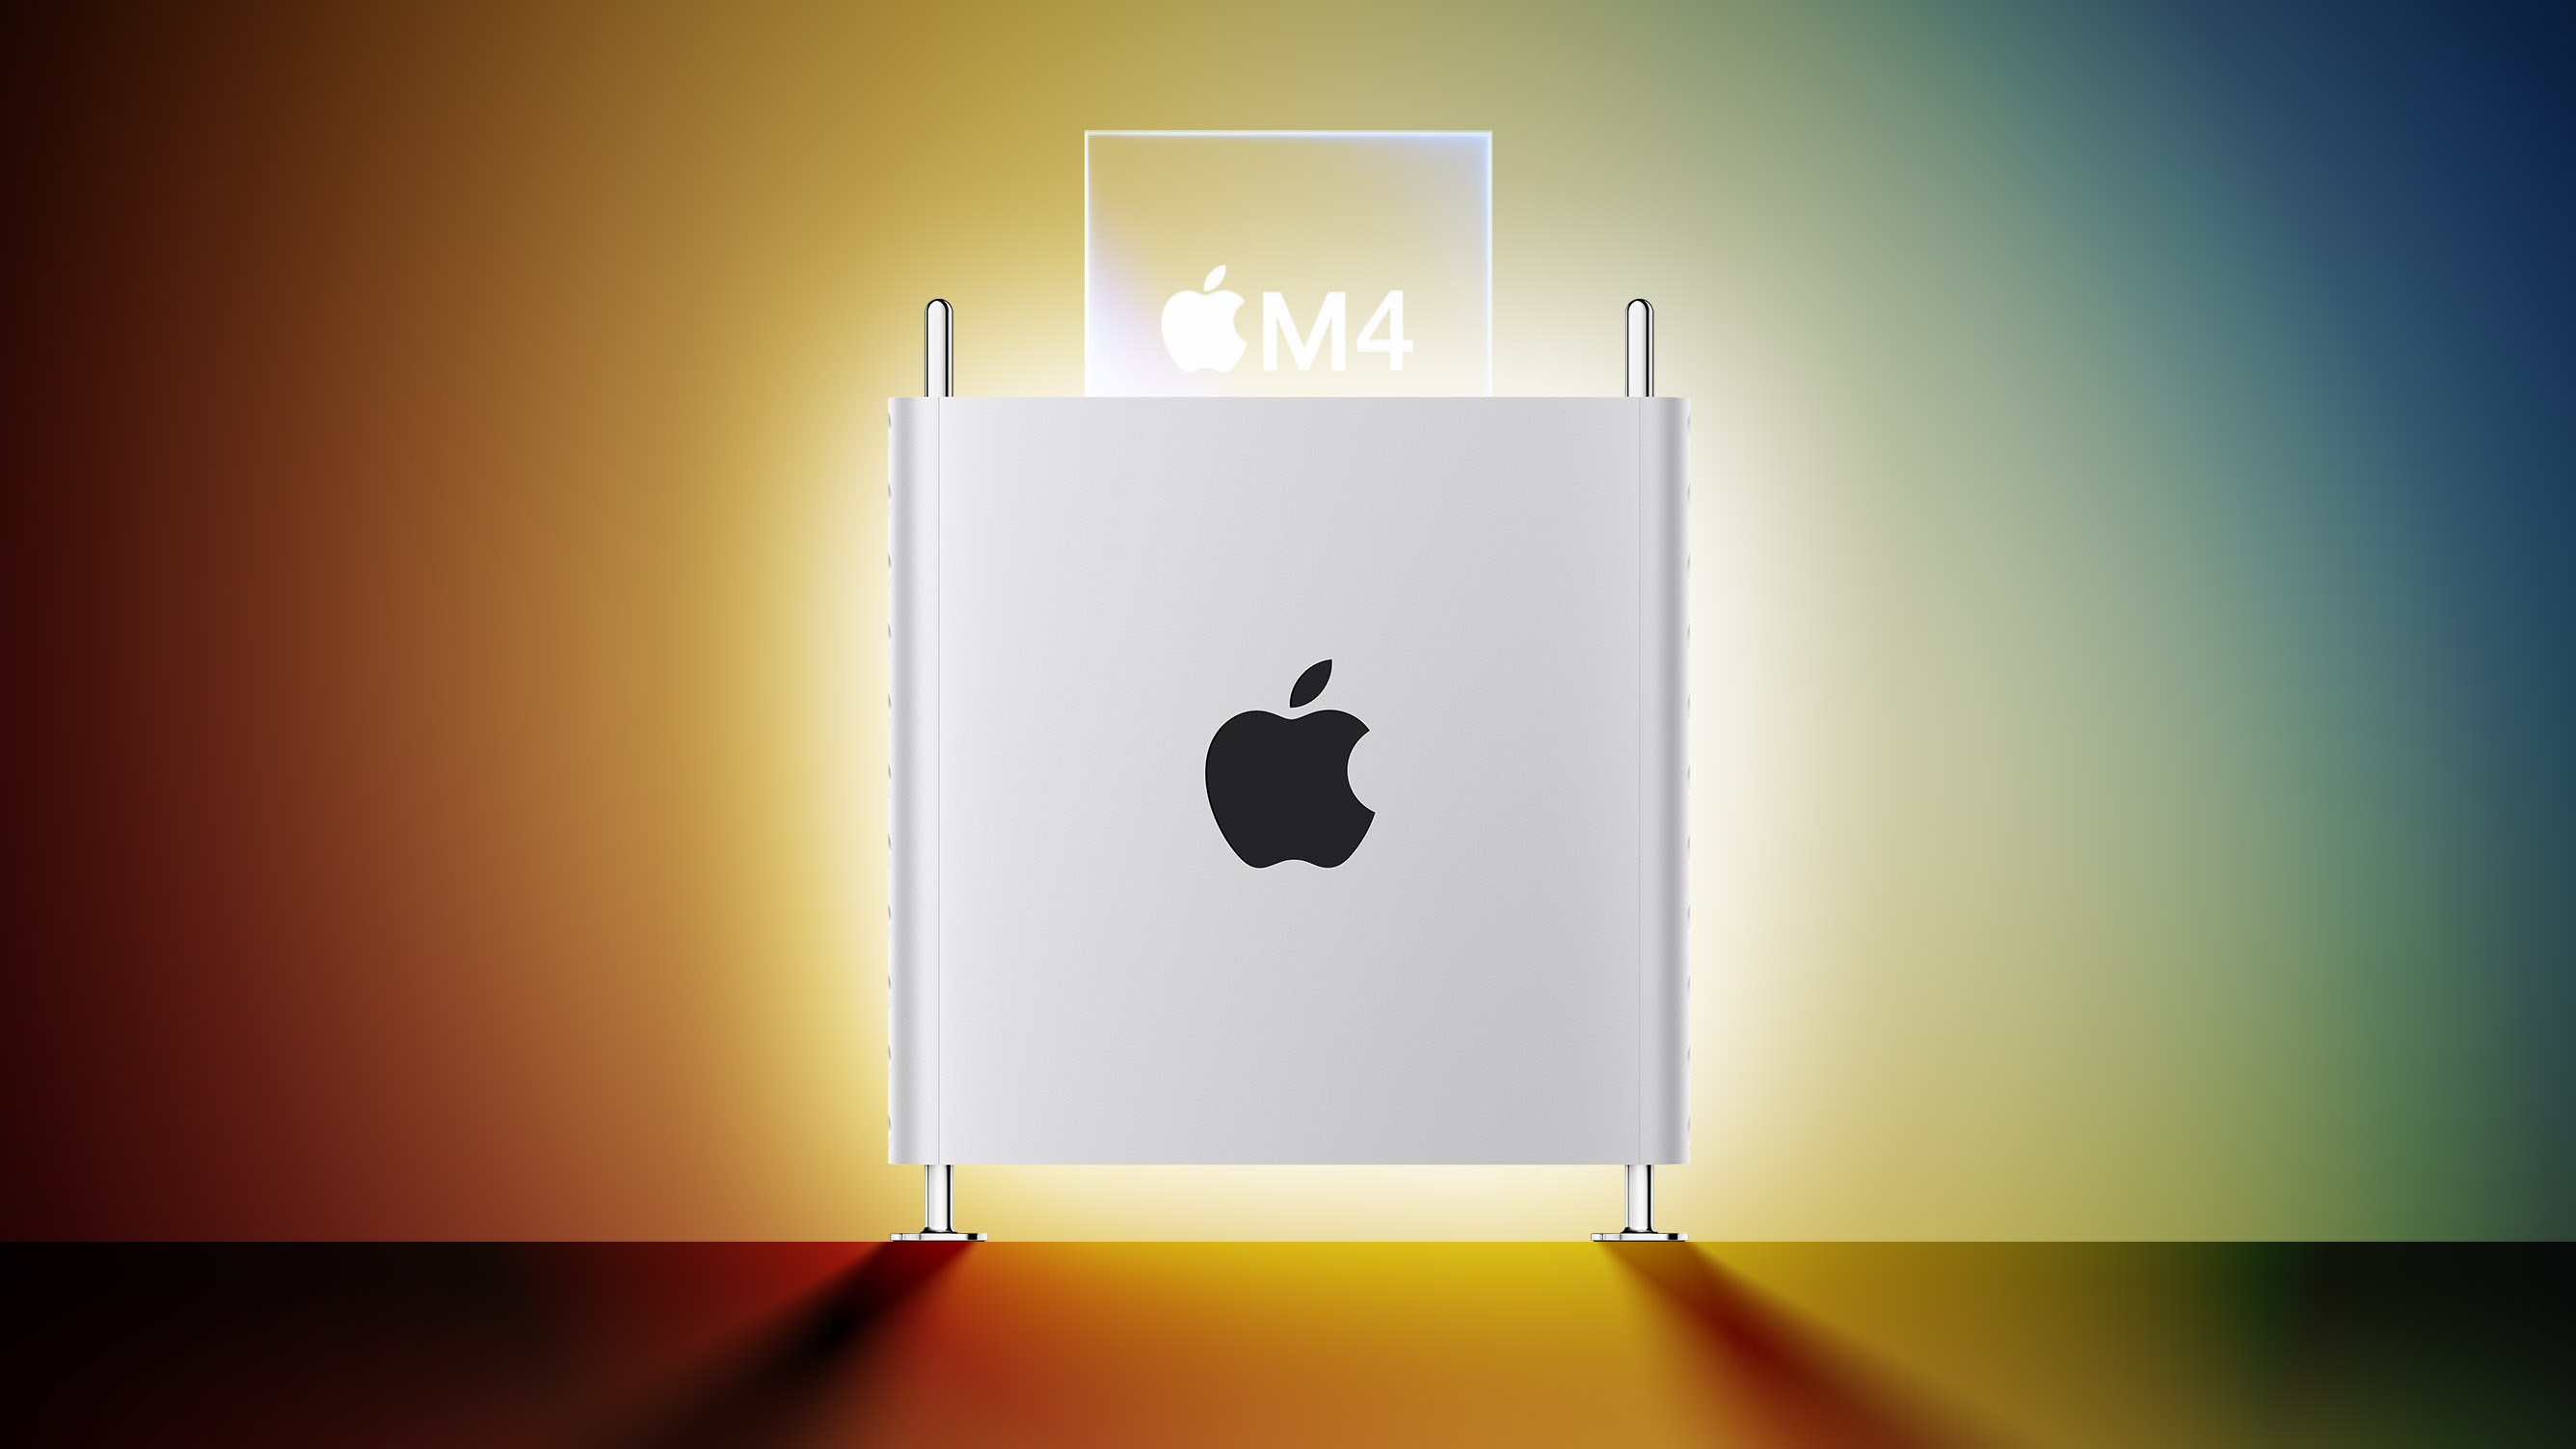 Apple's M4 Mac Pro von 2025: Was zu erwarten ist